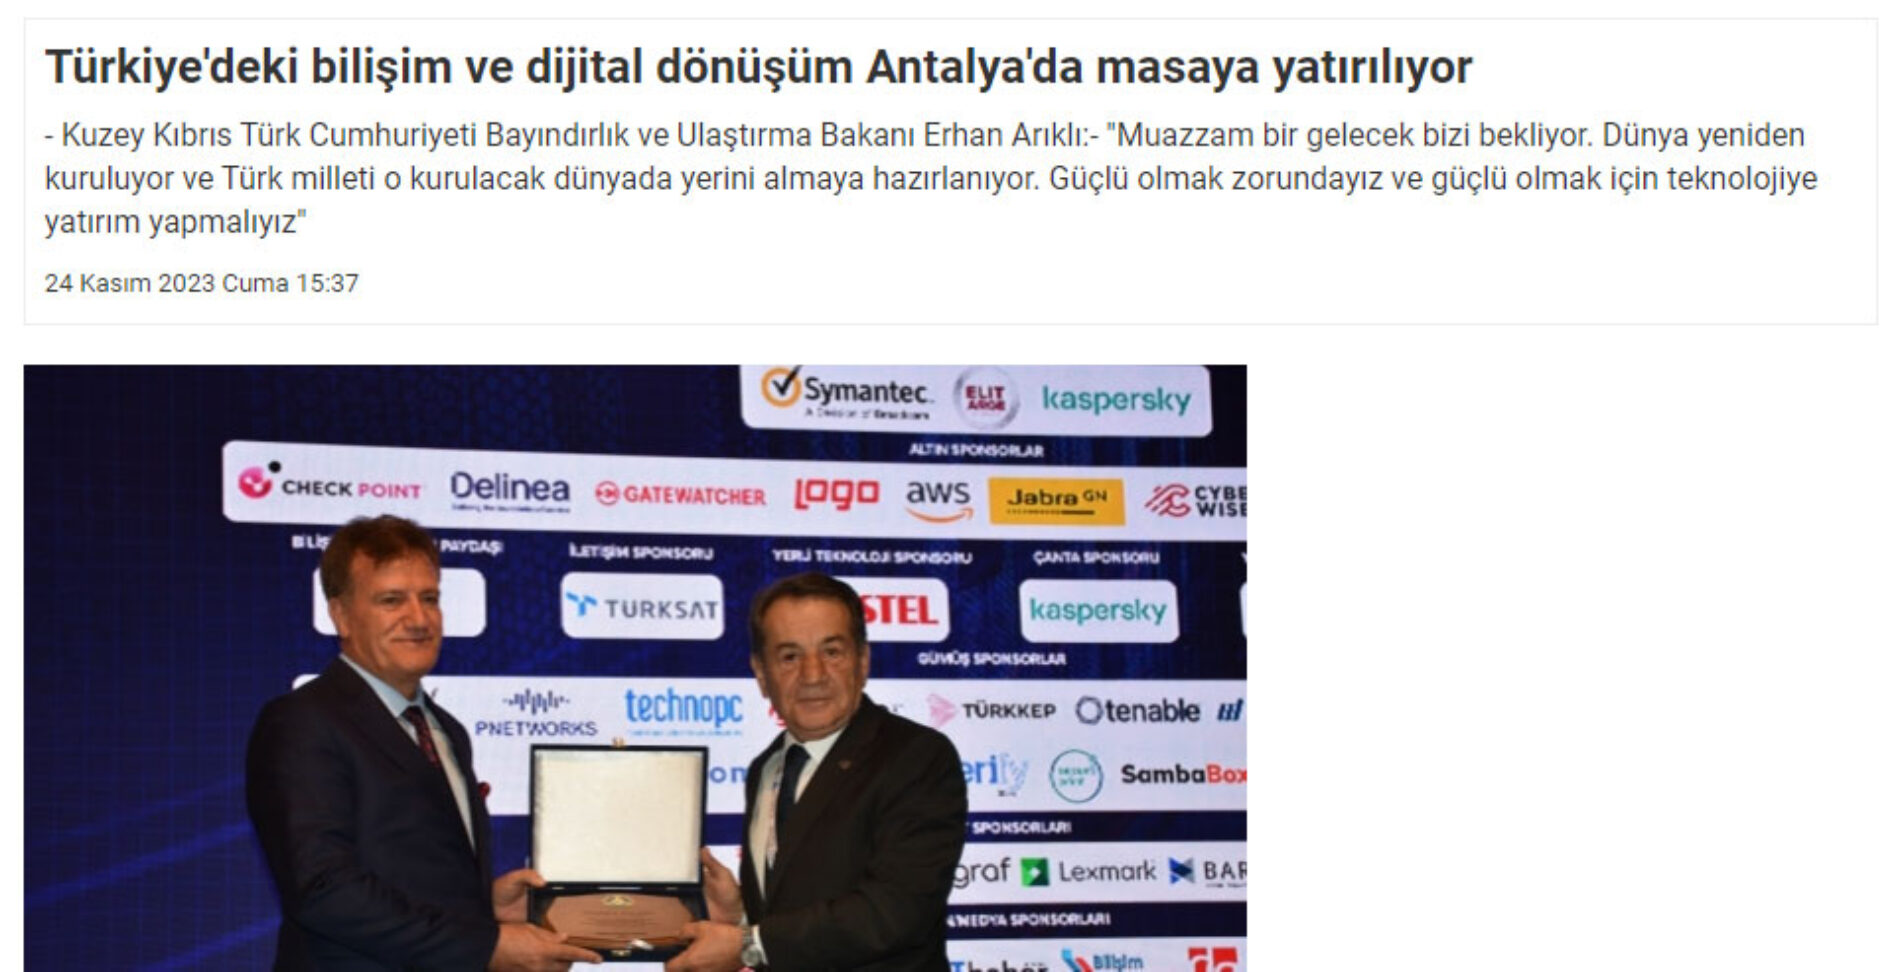 Türkiye’deki Bilişim ve Dijital Dönüşüm Antalya’da Masaya Yatırılıyor – MEMLEKETTEN HABER